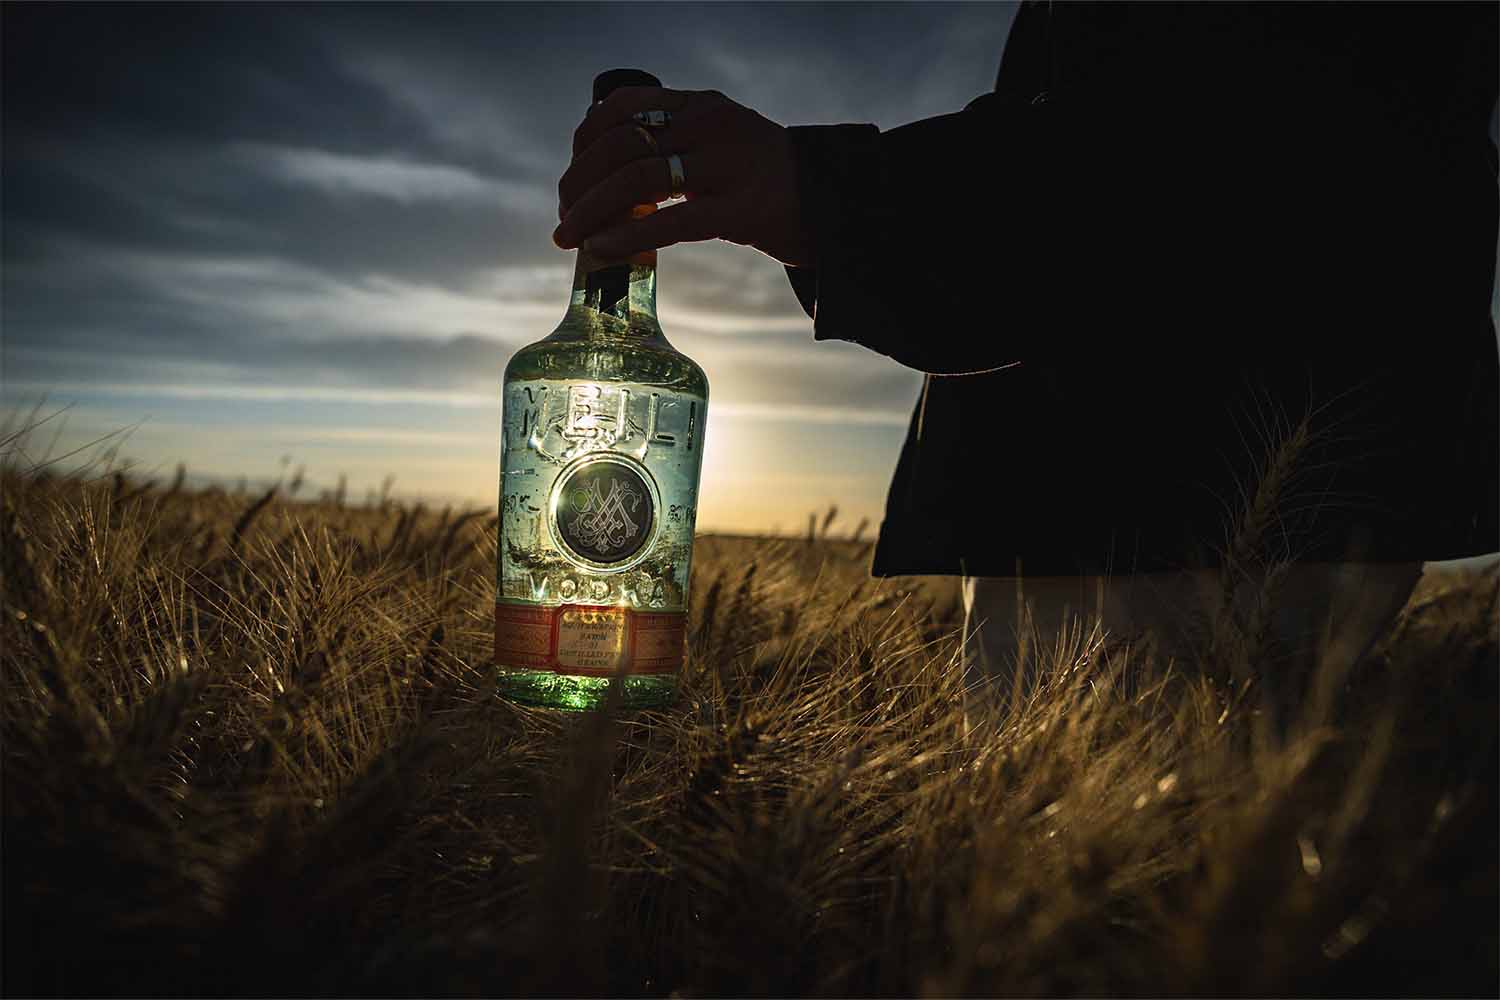 A bottle of Meili vodka in a field